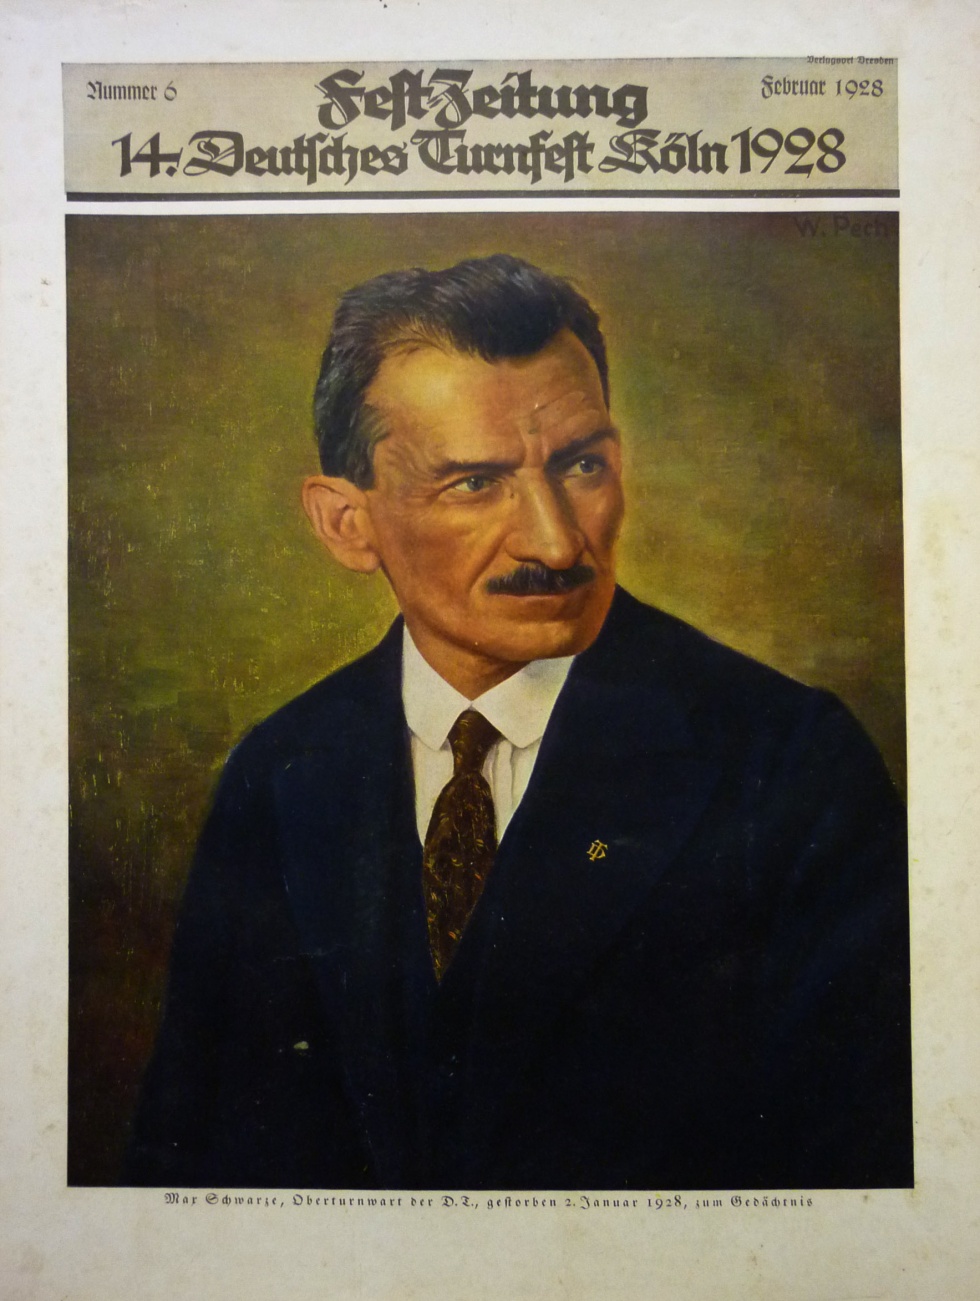 Festzeitung Nr. 6 / Februar 1928 (Museum Wolmirstedt RR-F)